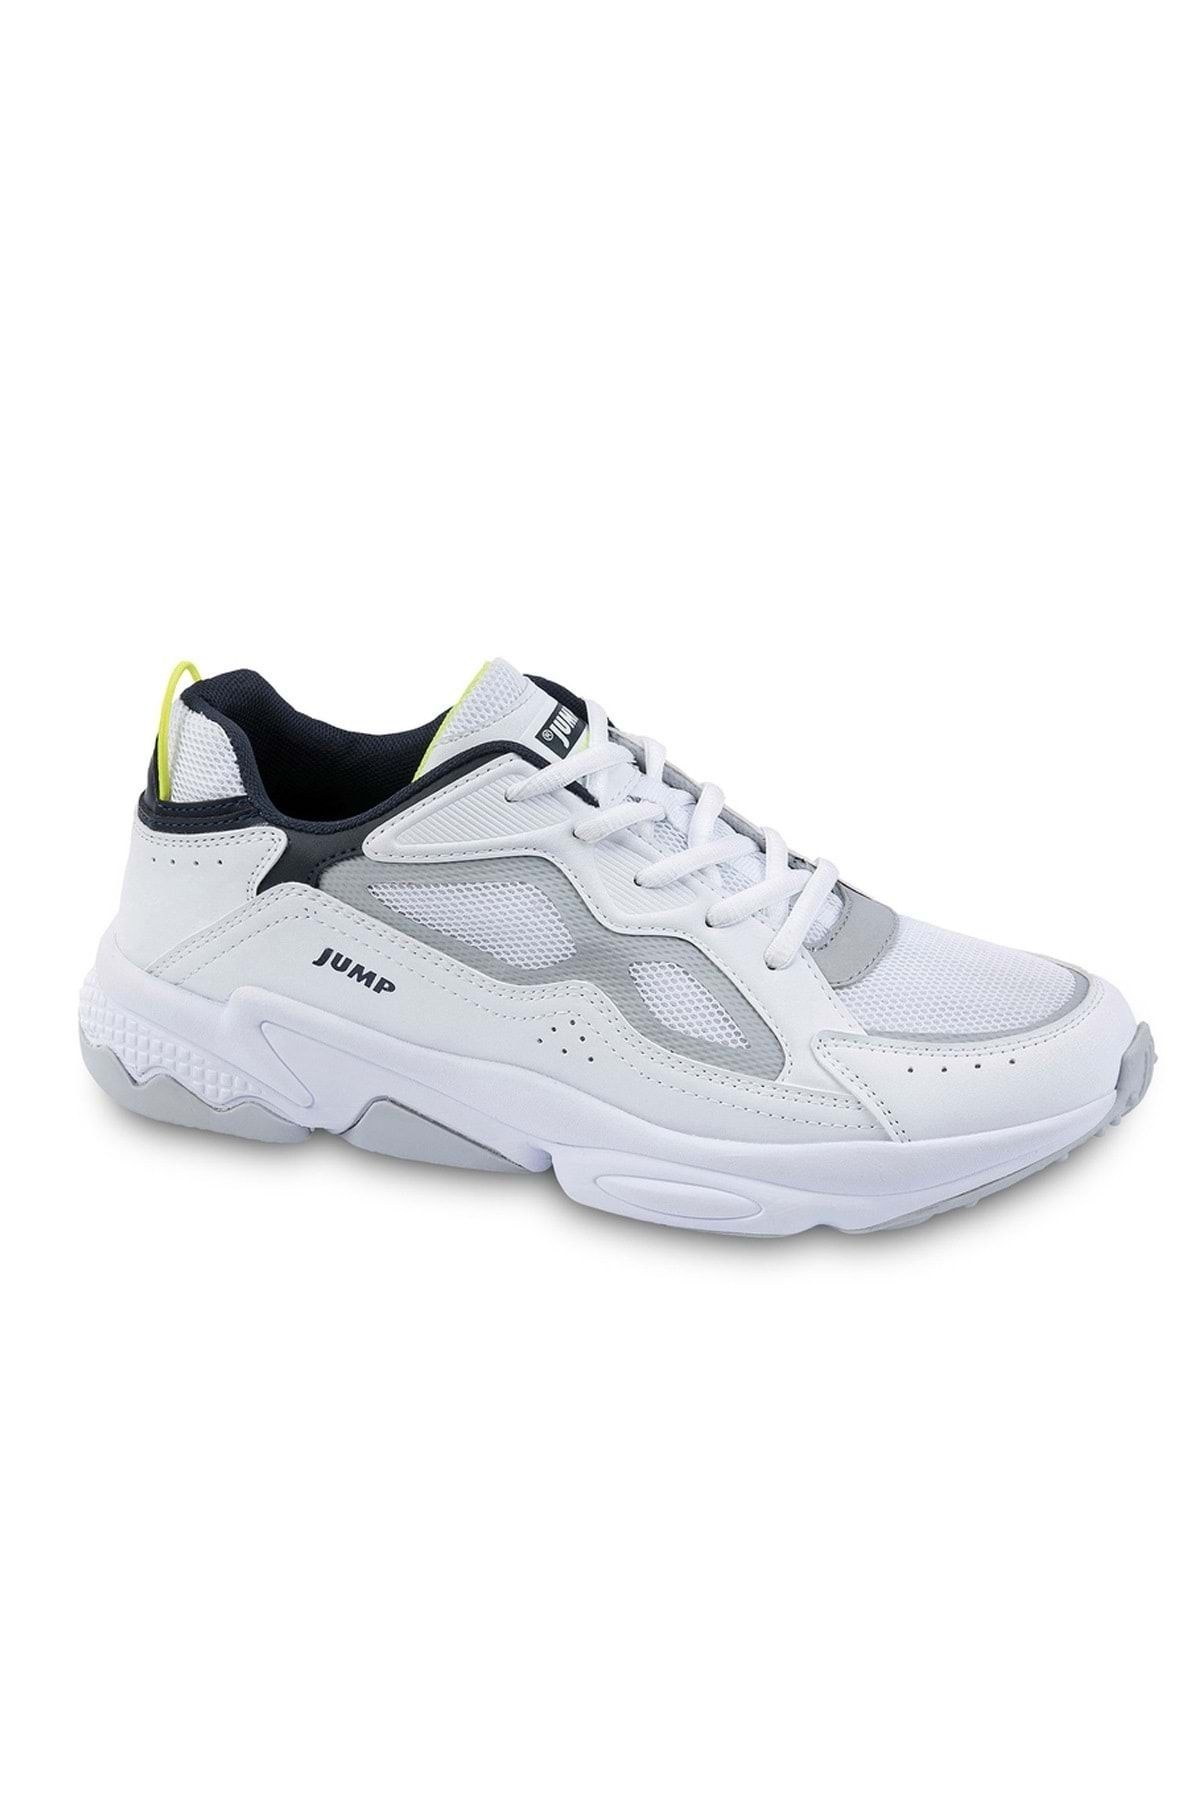 Jump Comfort Taban Erkek Spor Ayakkabı 24712* - Beyaz - 43